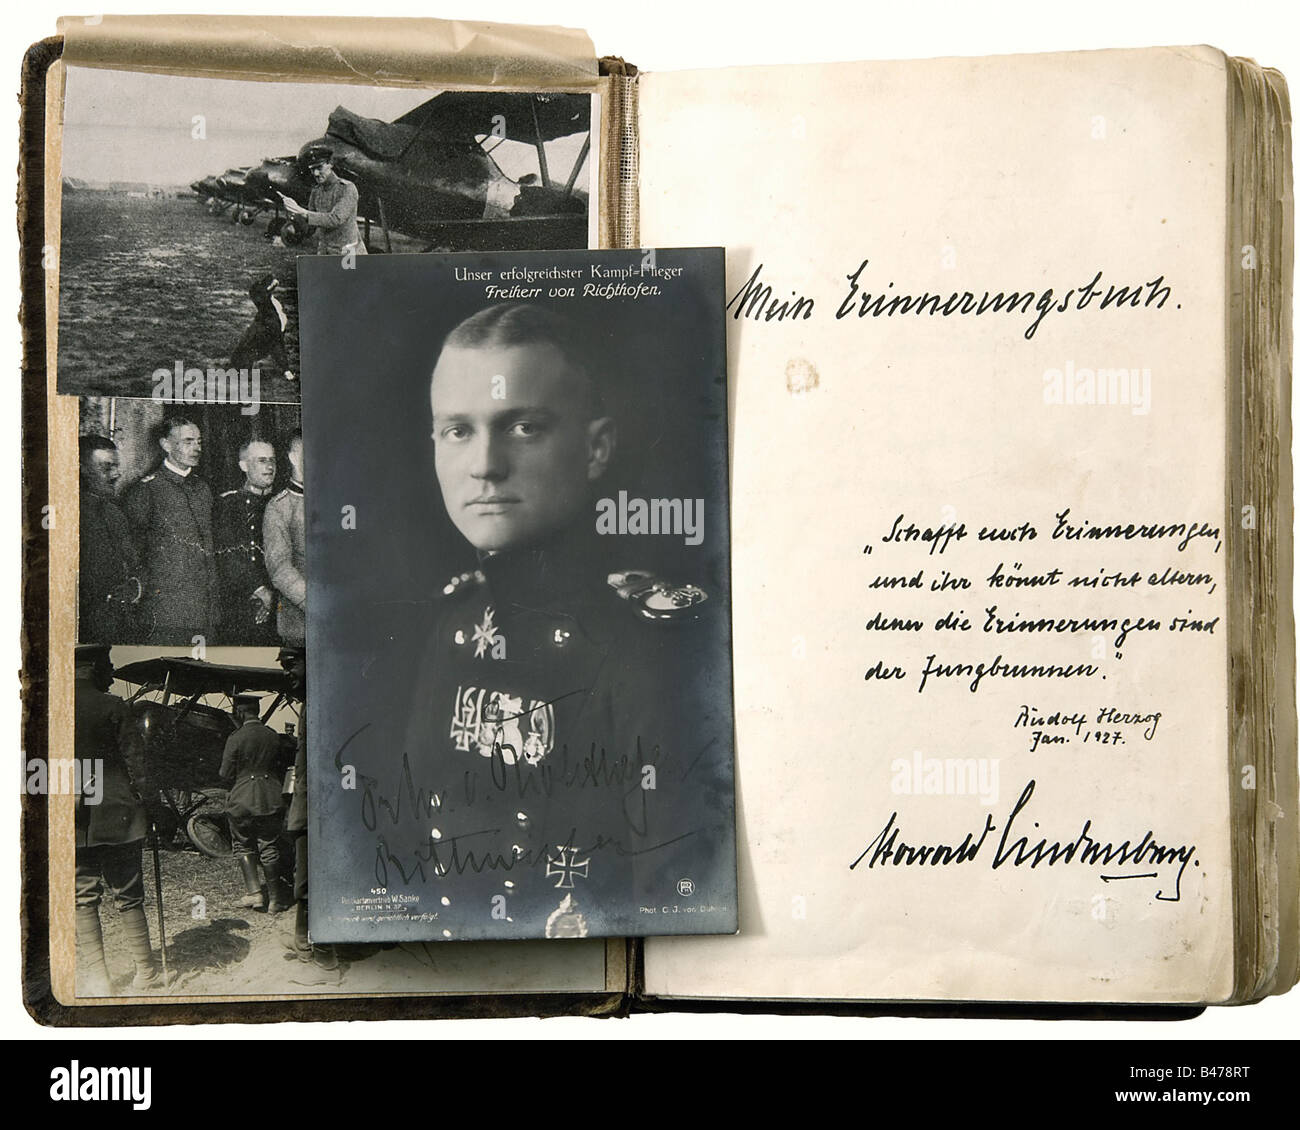 Harald Lindenberg - un album autografo., un album di cimeli del periodo 1926 - 1939, a partire da tre foto di aviatori della Prima guerra mondiale e una cartolina ritratto del barone di Manfred von Richthofen, firmato in inchiostro 'Frhr. Von Richthofen Rittmeister', E 'Geschenk von Onkel Bülow' (Presente da zio Bülow) scritto sul retro. L'album continua con, tra gli altri: Friedrich Ebert (foto e autografo), Ludendorff (foto e autografo), Gerhart Hauptmann (autografo), John Hagenbeck (giornale fotografico e autografo), Franz von Epp (foto e autoscata, Foto Stock